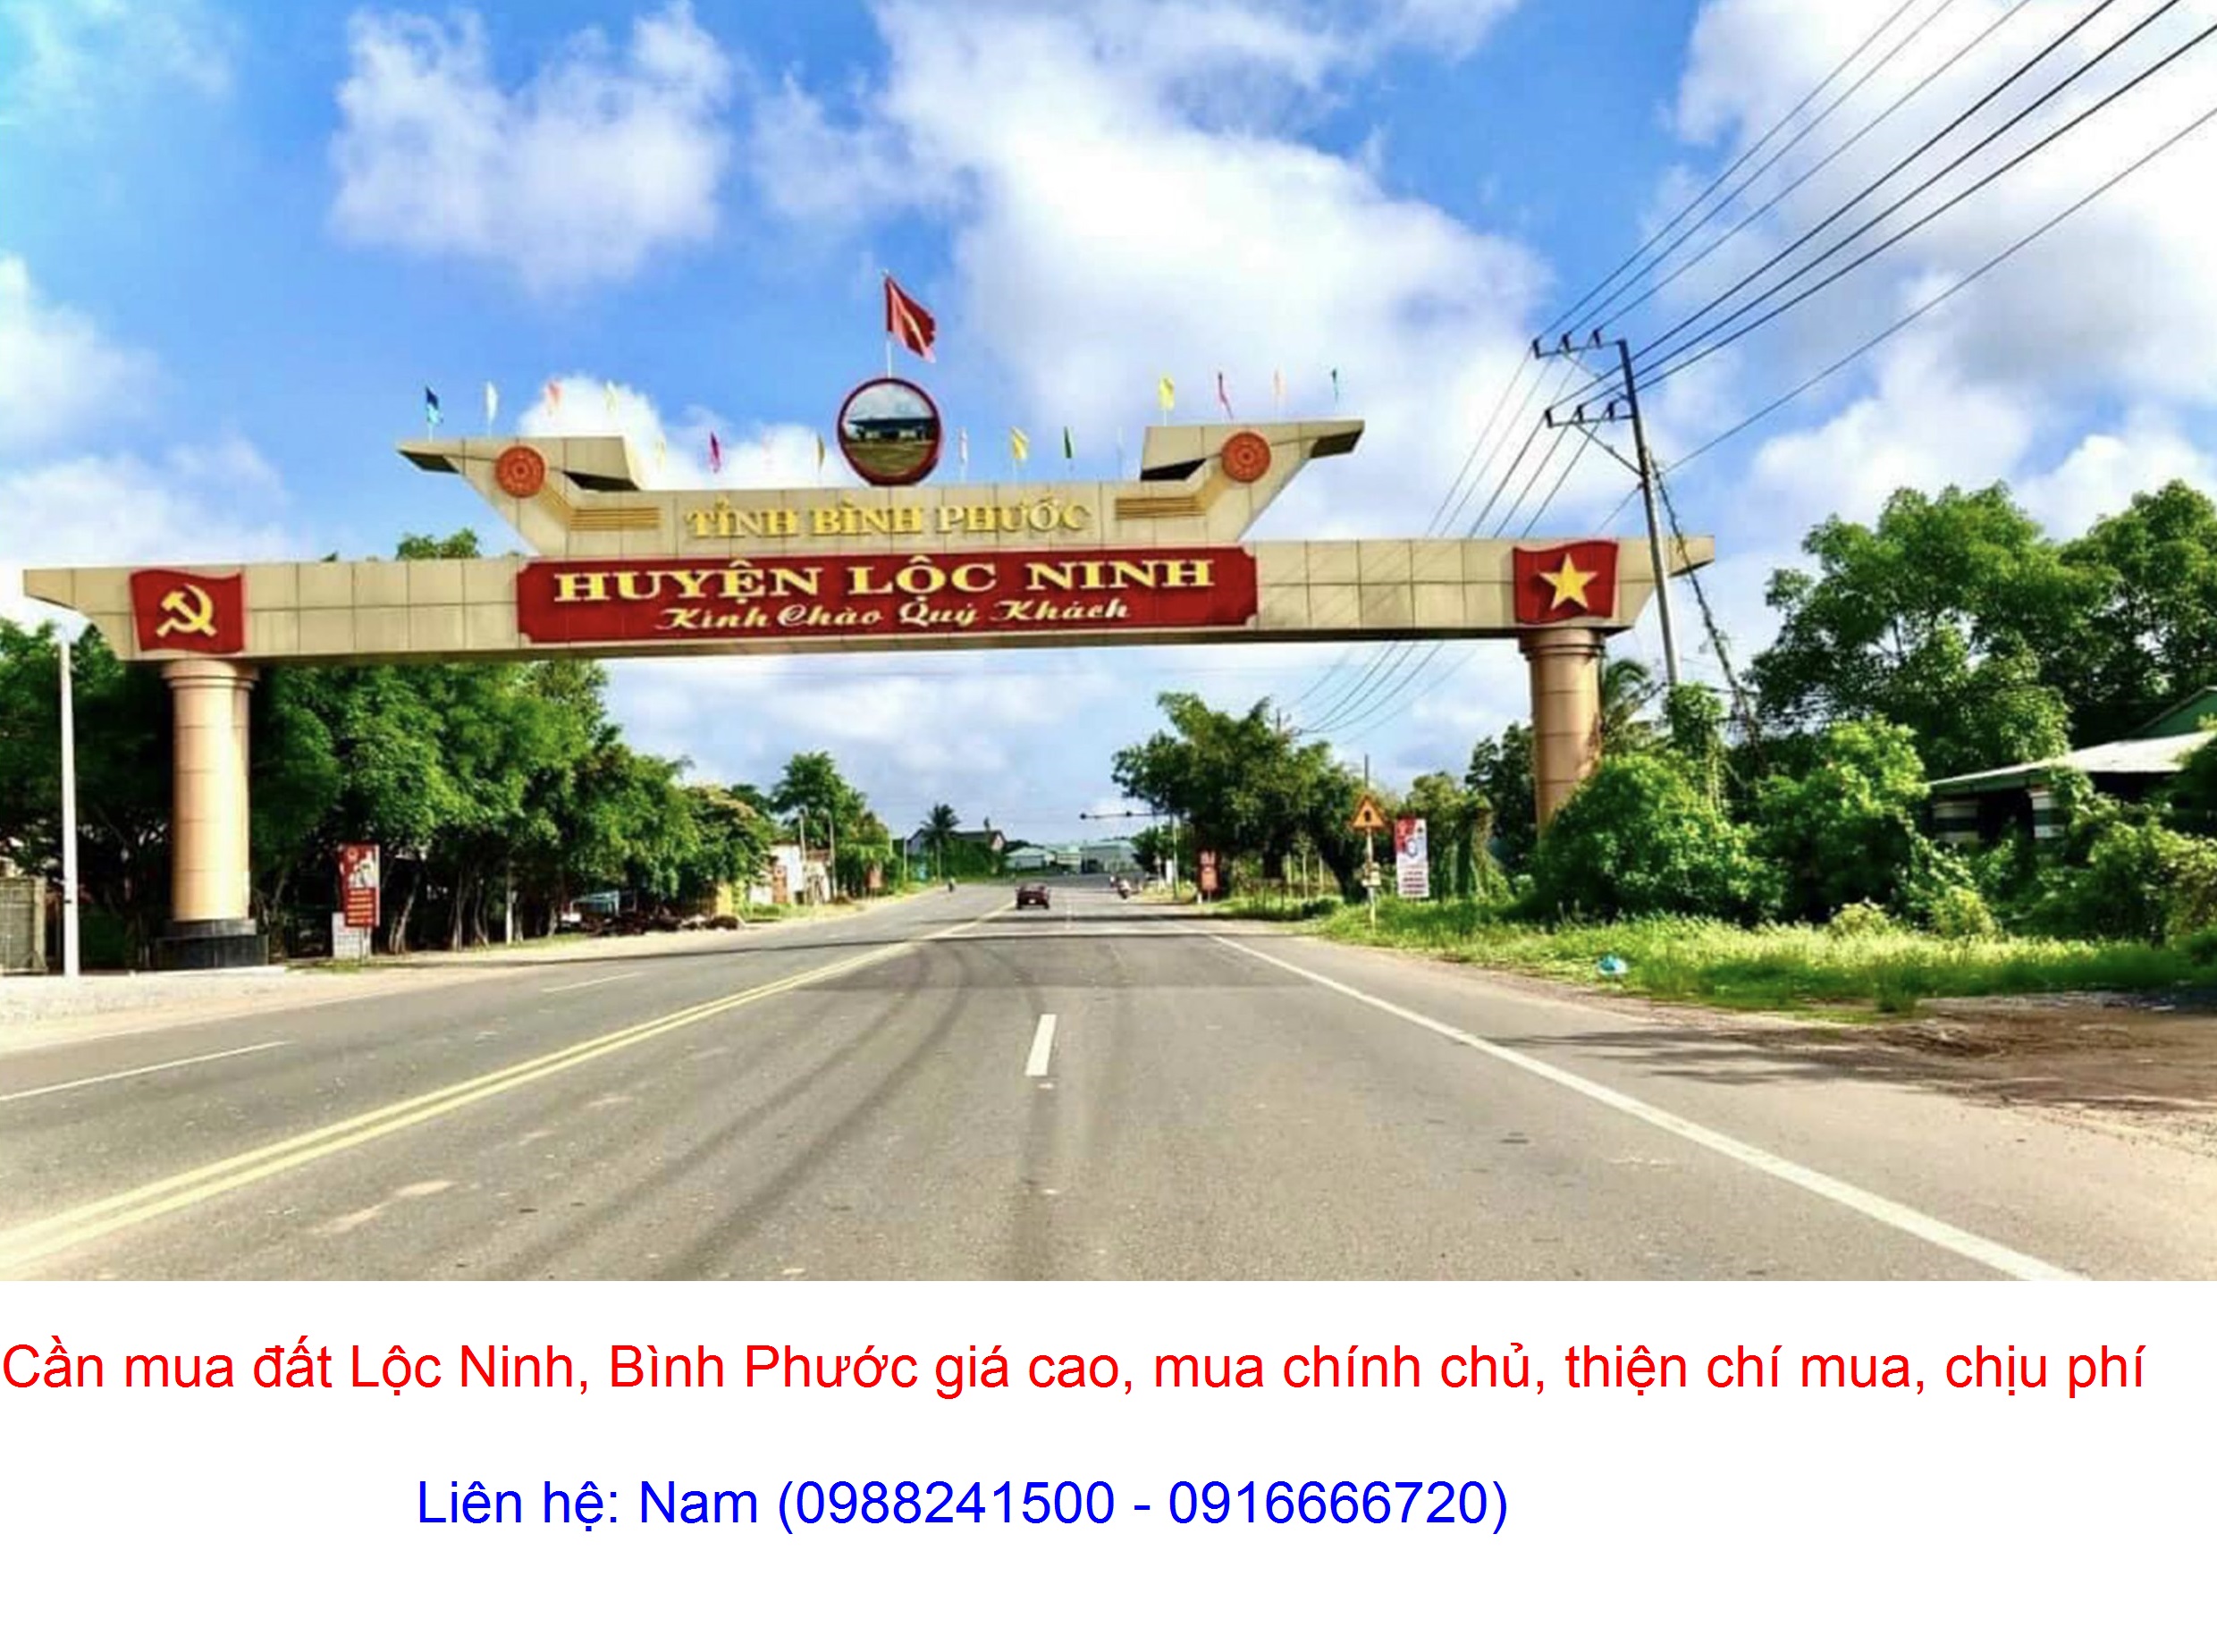 Mua đất xã Thanh An, huyện Hớn Quản giá cao, thiện chí mua